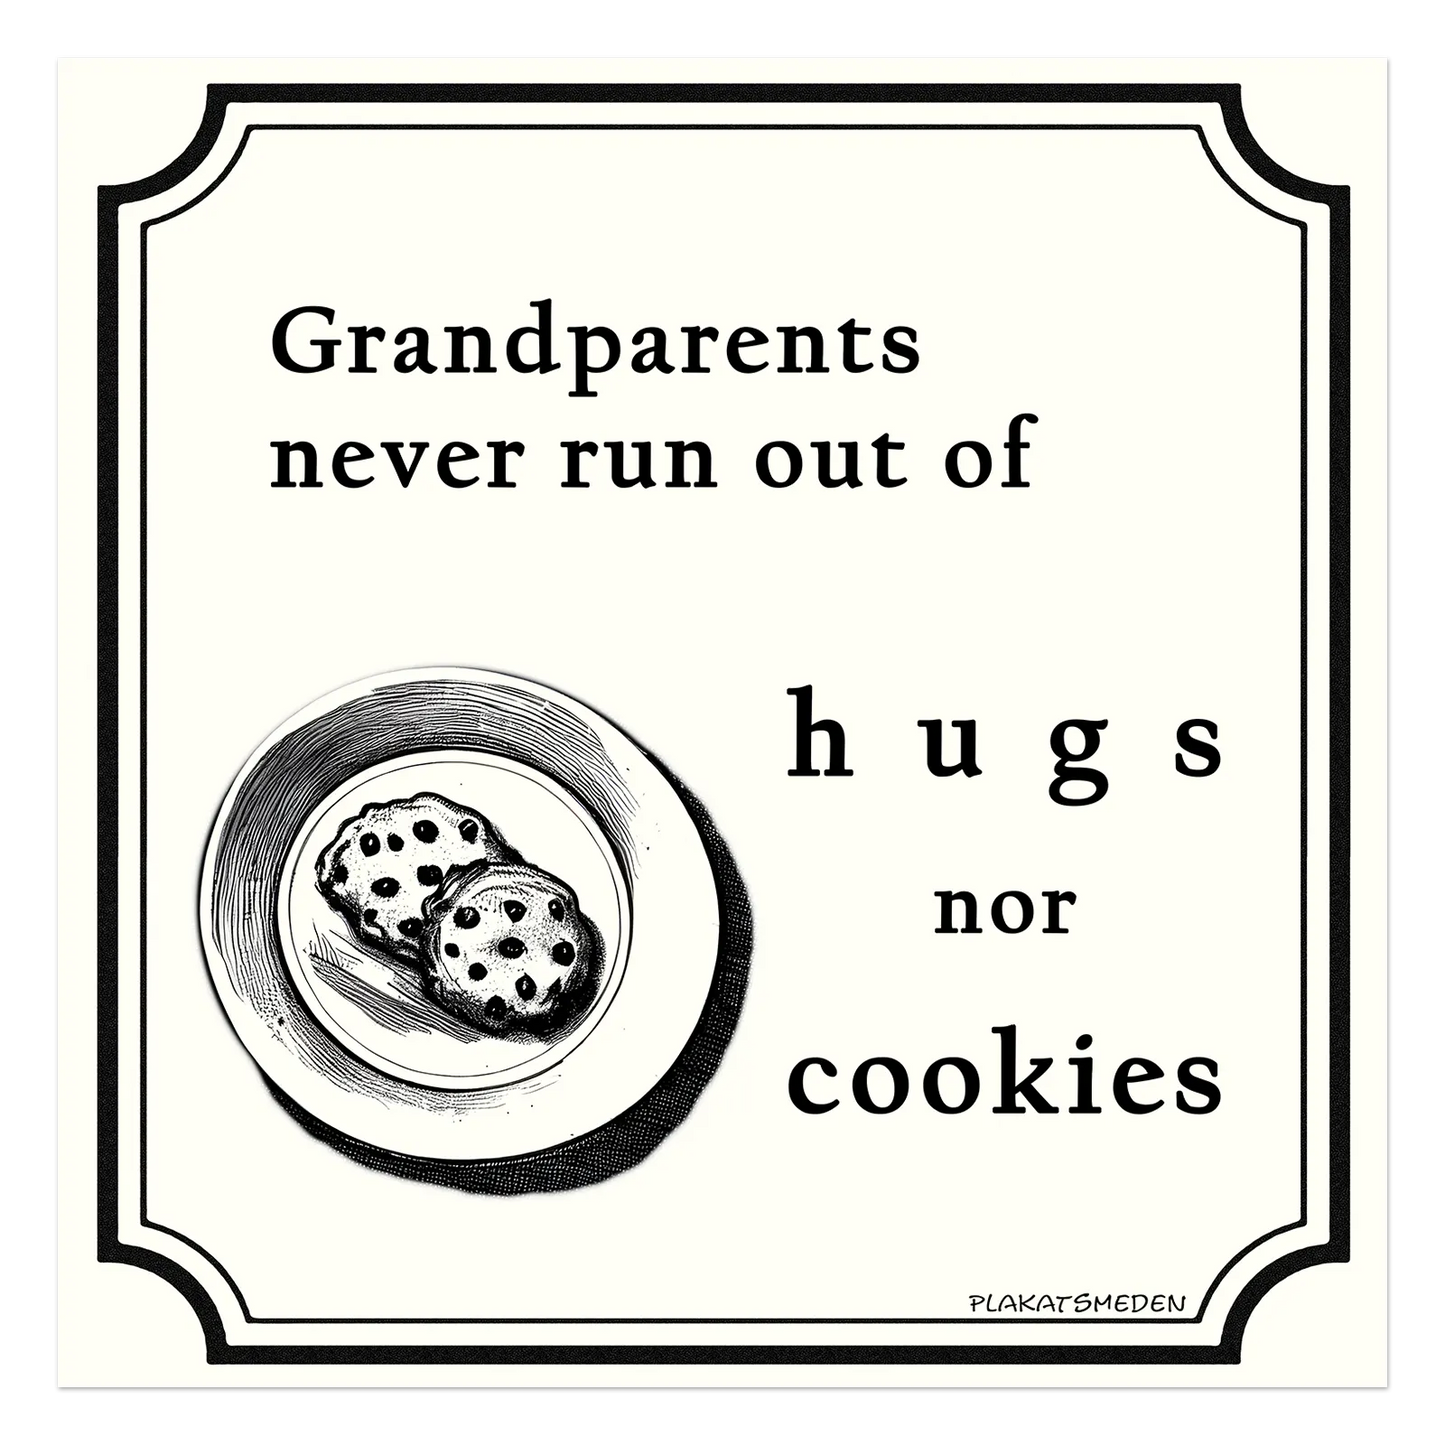 Bedsteforældre løber aldrig tør for hverken kram eller kager